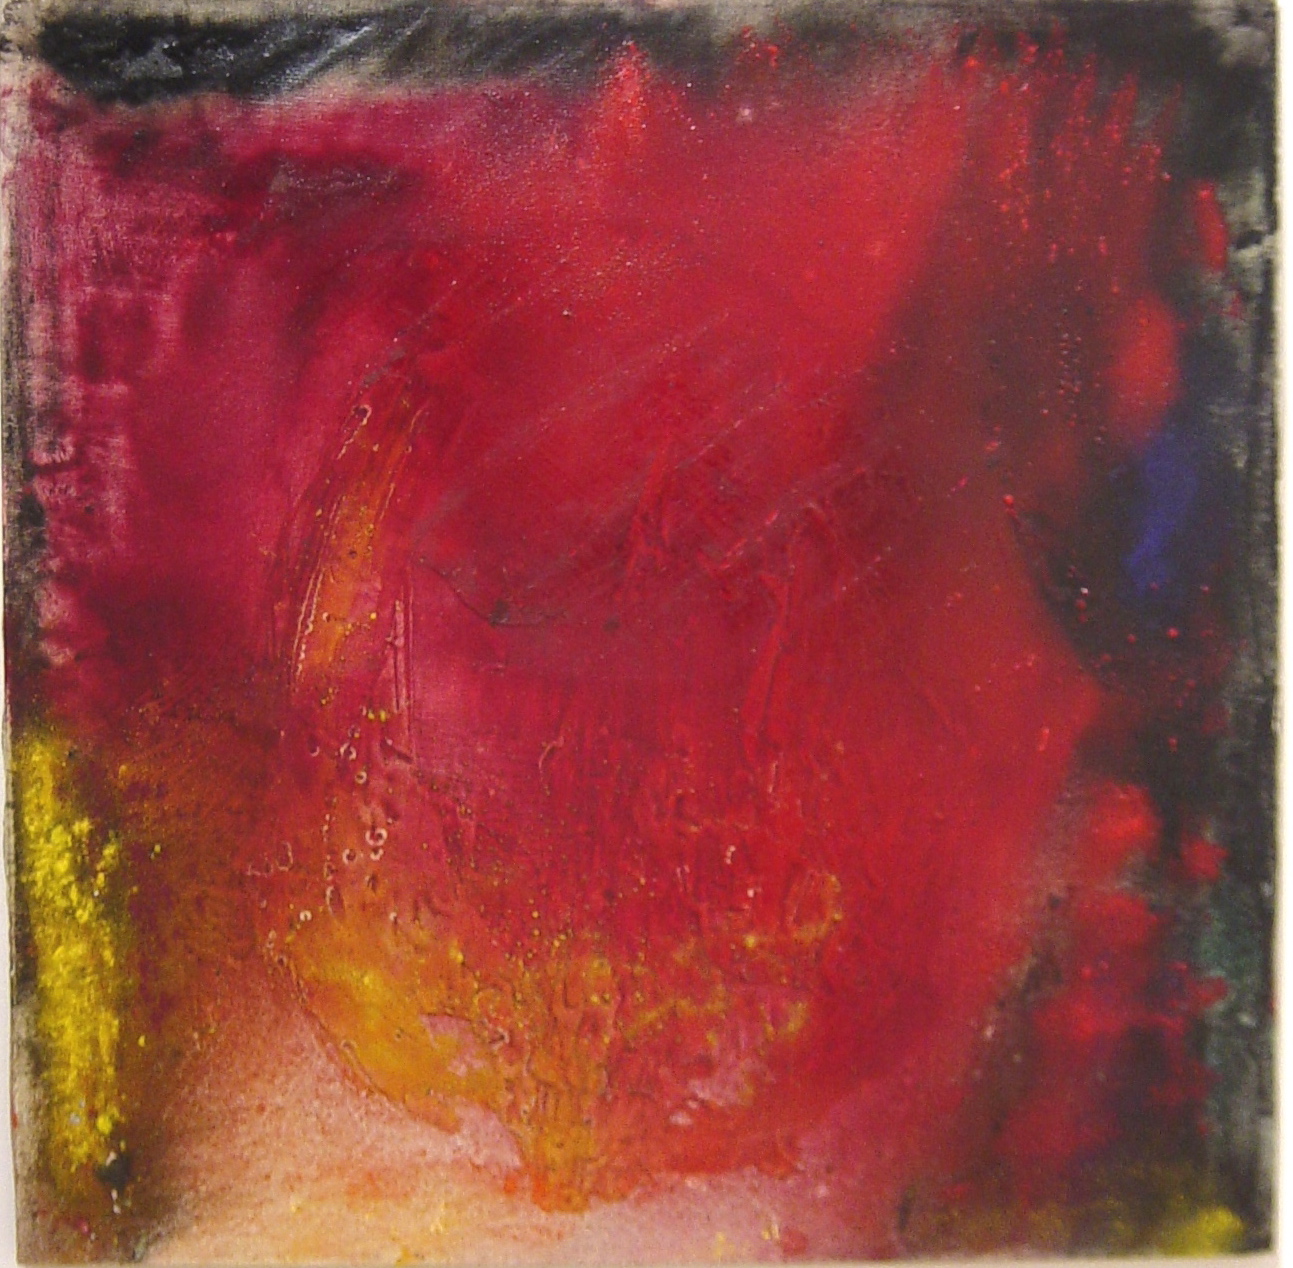 Senza titolo, 1969, colori in polvere su tela, 110 x 110 cm